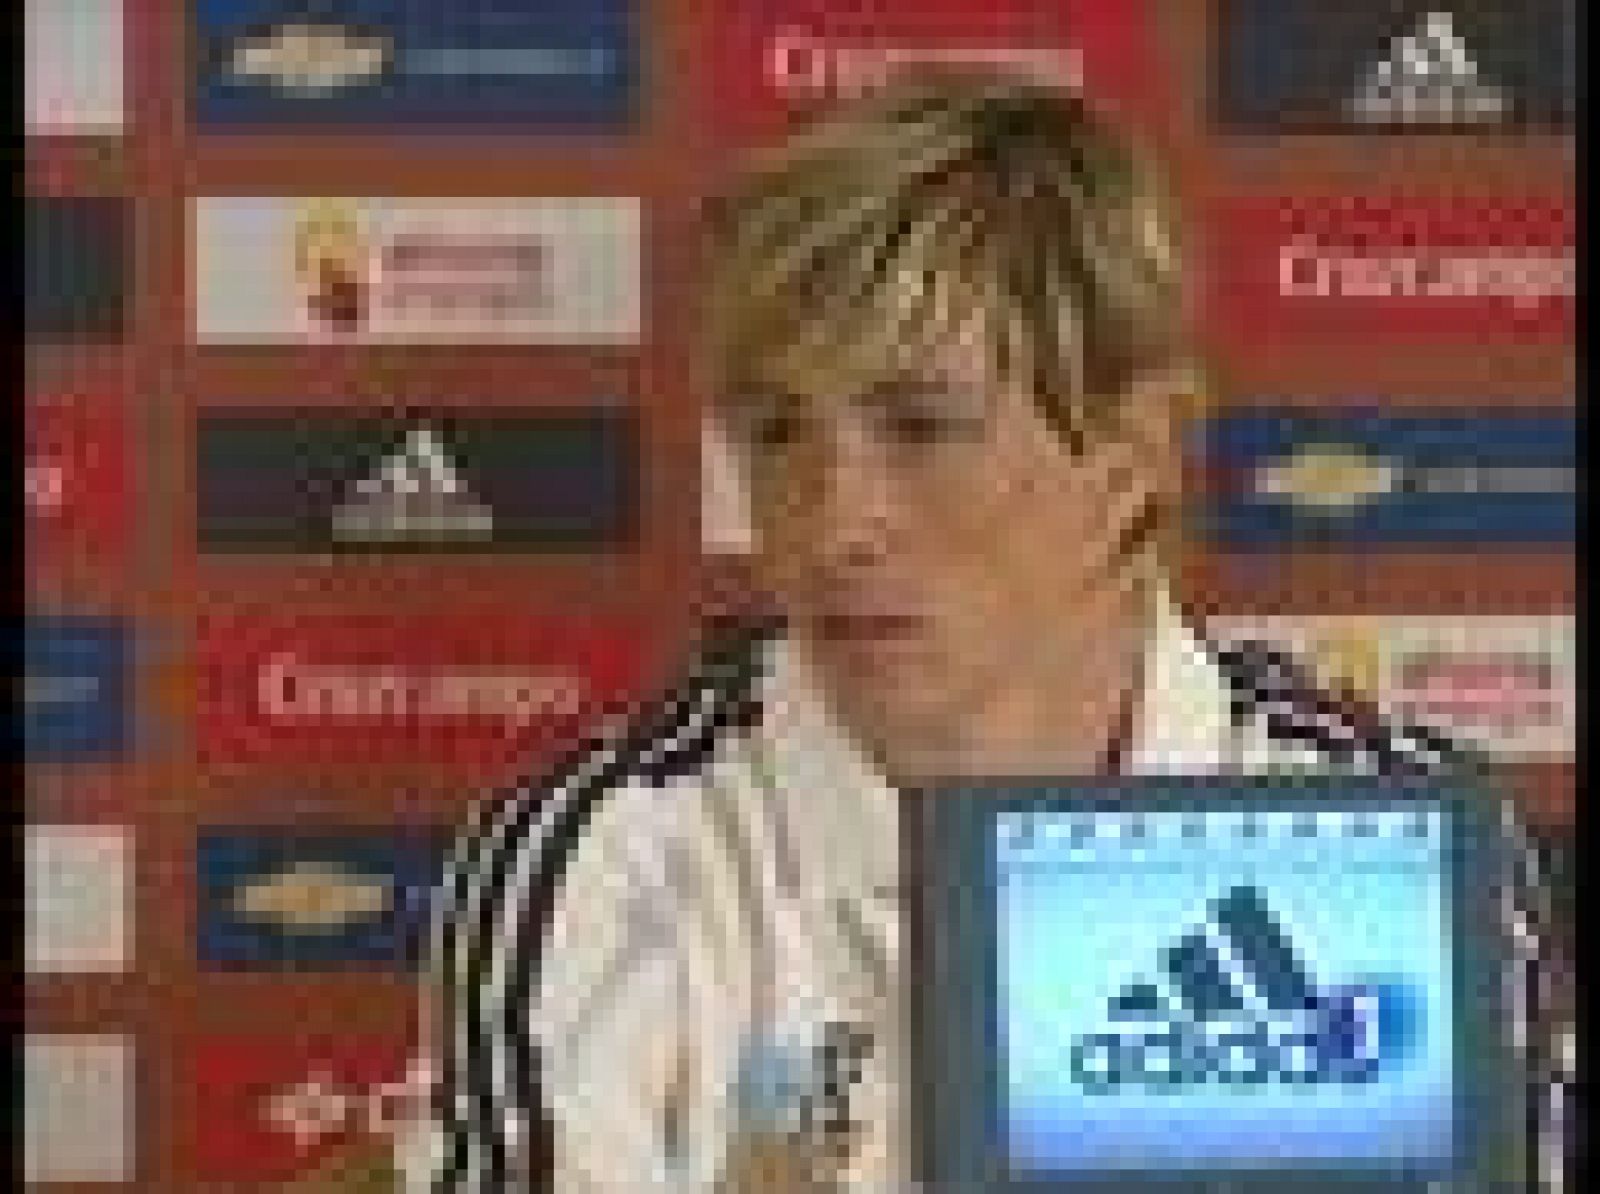 Fernando Torres ha reivindicado a los jugadores españoles y critica que se paguen fichajes multimillonarios y no se pague lo mismo por un jugador español.